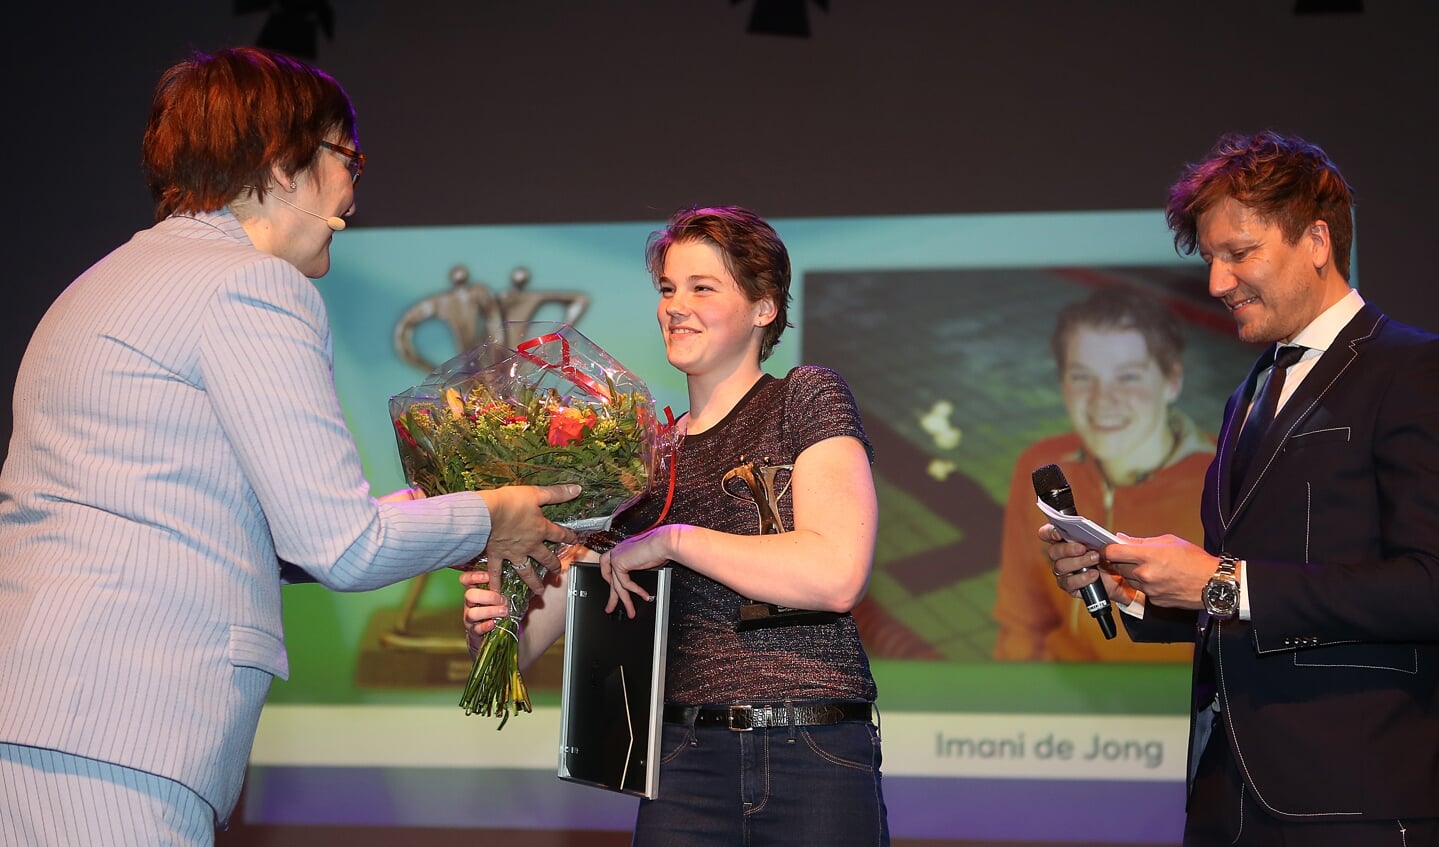 Wethouder Mieke Booij reikt de prijs uit aan het winnende talent Imani de Jong. 